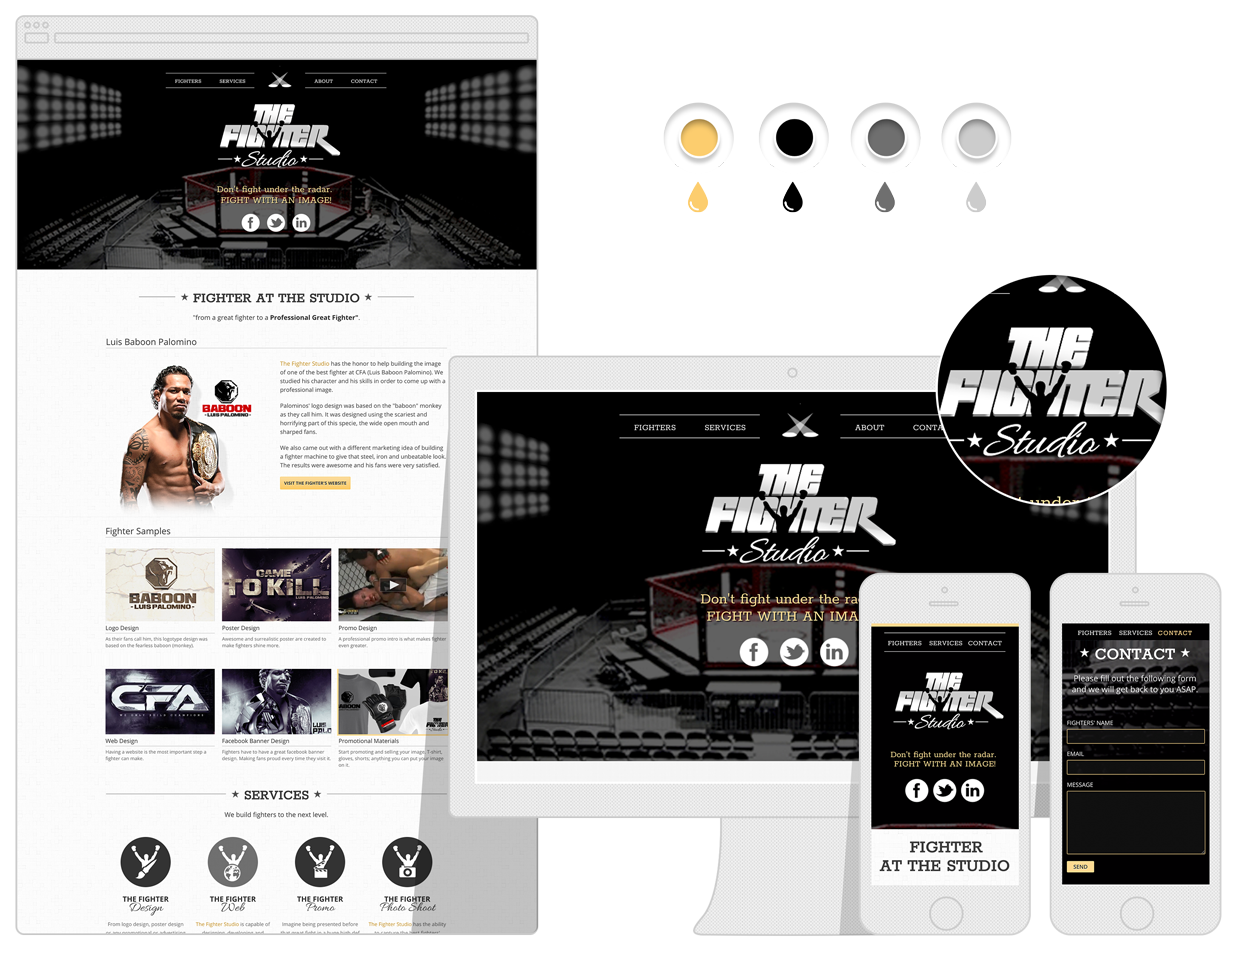 The Fighter Studio website